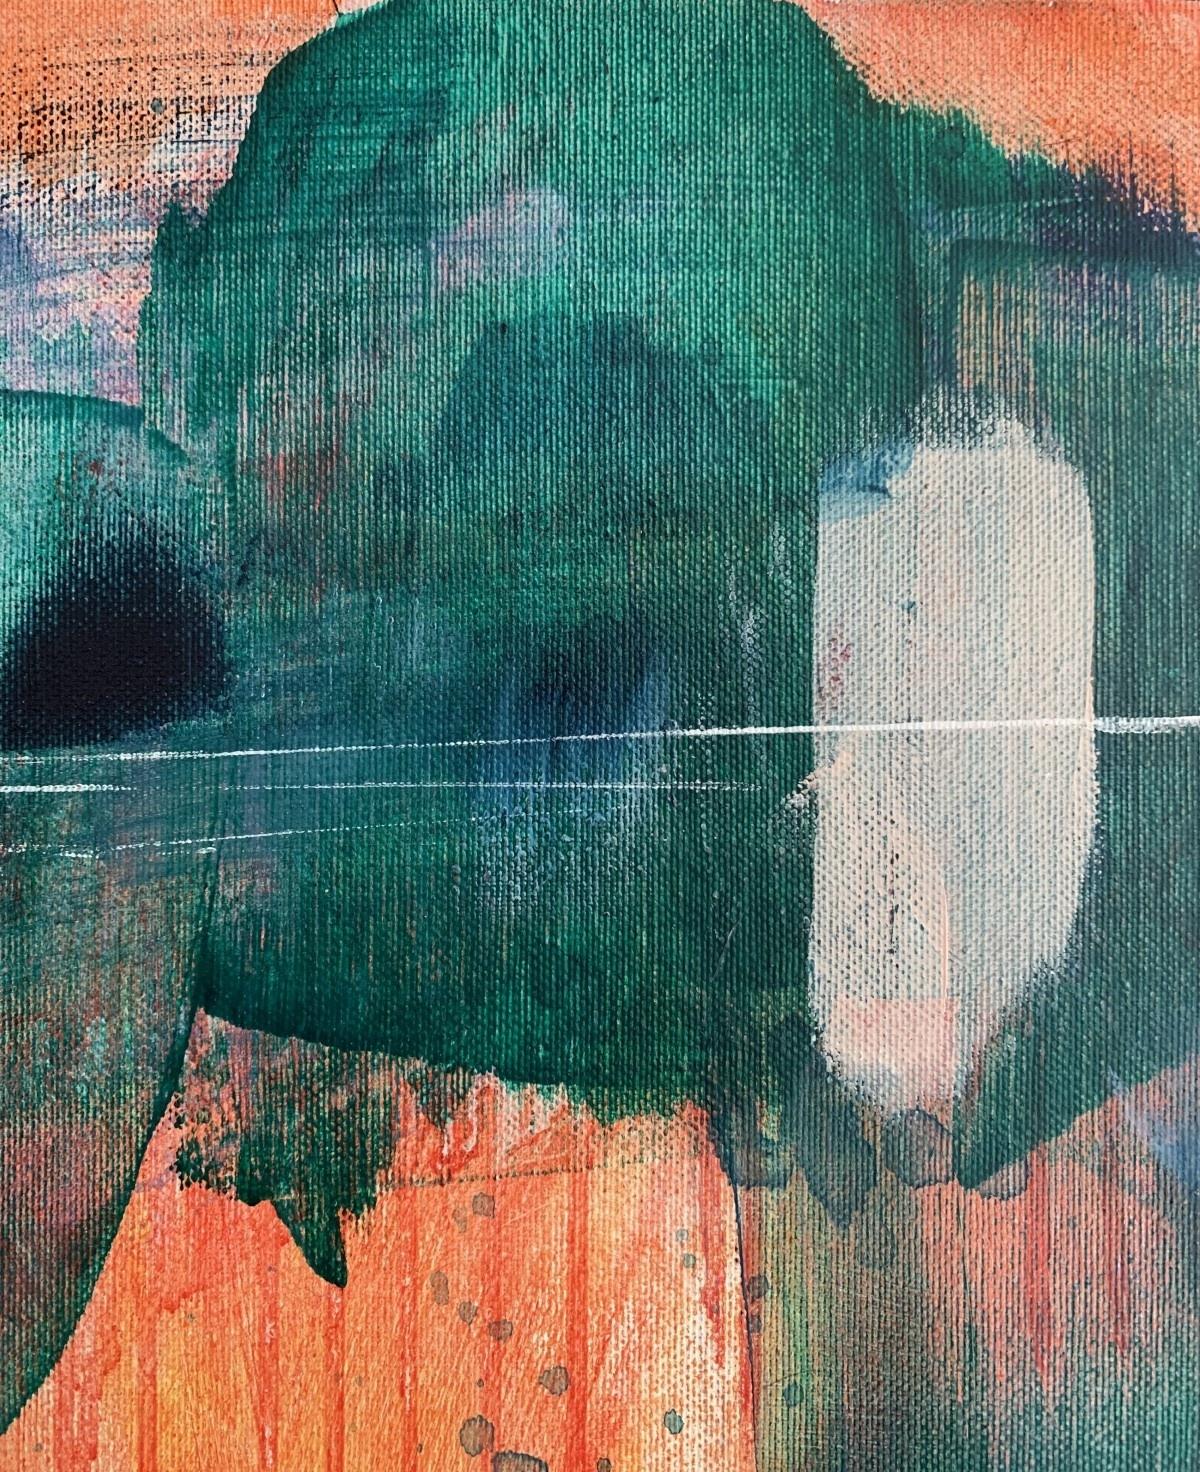 Grüner Wald - Zeitgenössische abstrakte Malerei Acrylfarben, polnischer Künstler (Grau), Abstract Painting, von Anna Masiul-Gozdecka